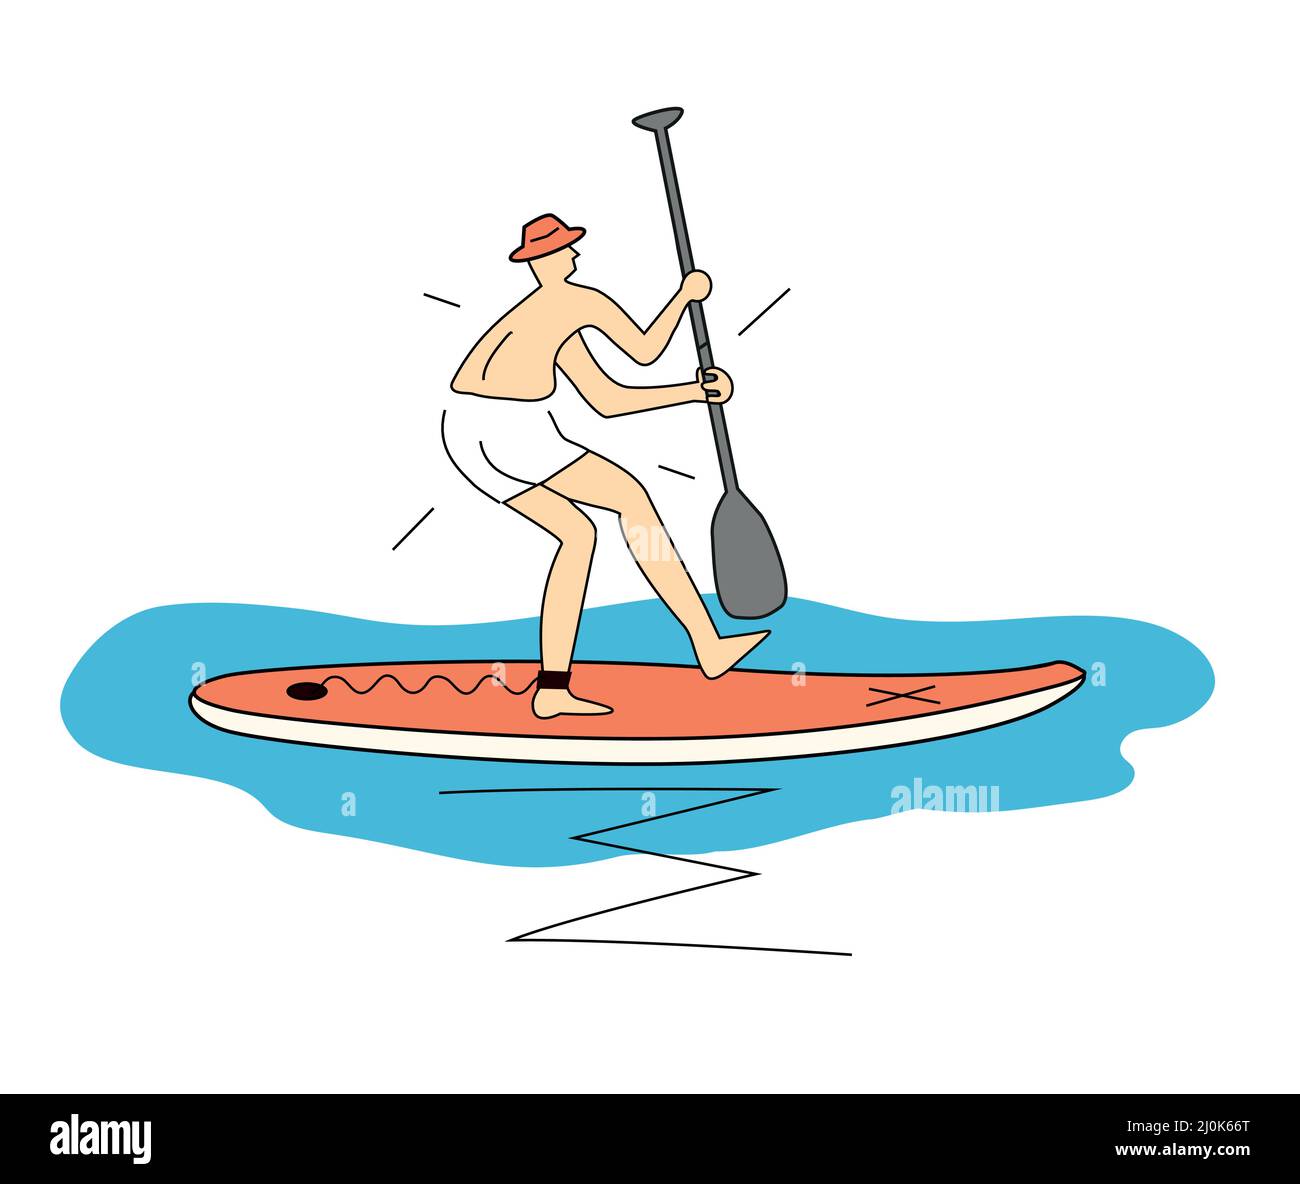 Divertente principiante su paddleboard, cartone animato. Semplice illustrazione stilizzata di un uomo divertente e spaventato con cappello a cavallo su una tavola da paddleboard. T-shirt design. Vettore ava Illustrazione Vettoriale